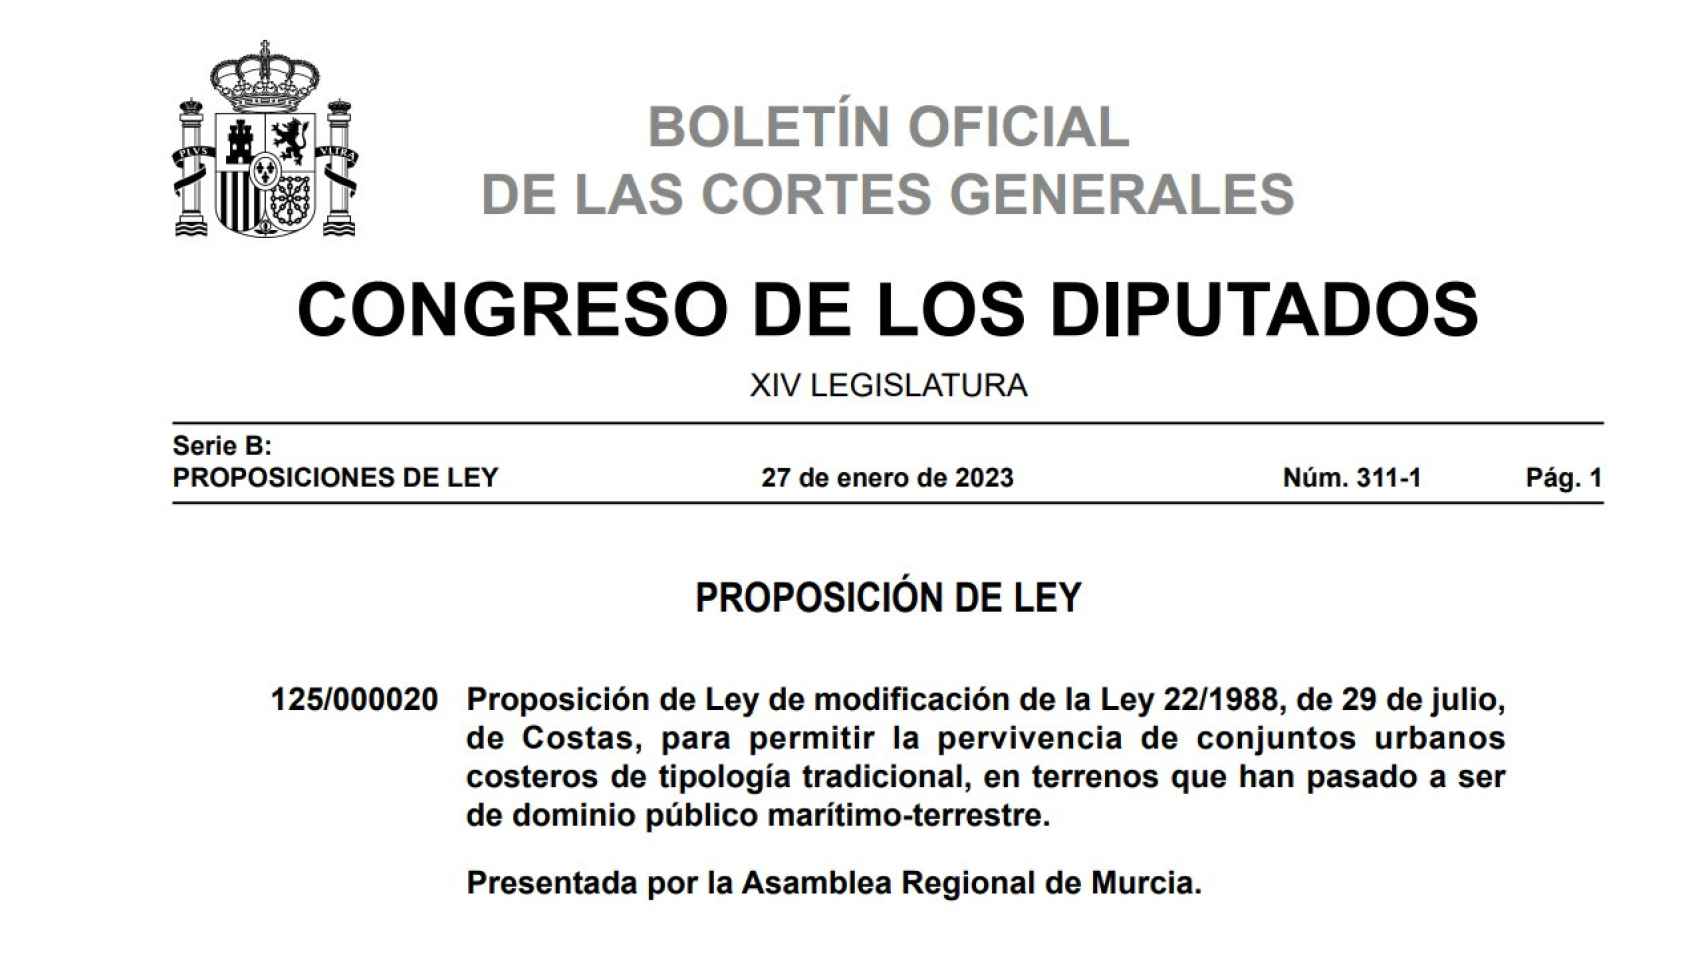 Publicación en el Congreso de los Diputados el pasado mes de enero.